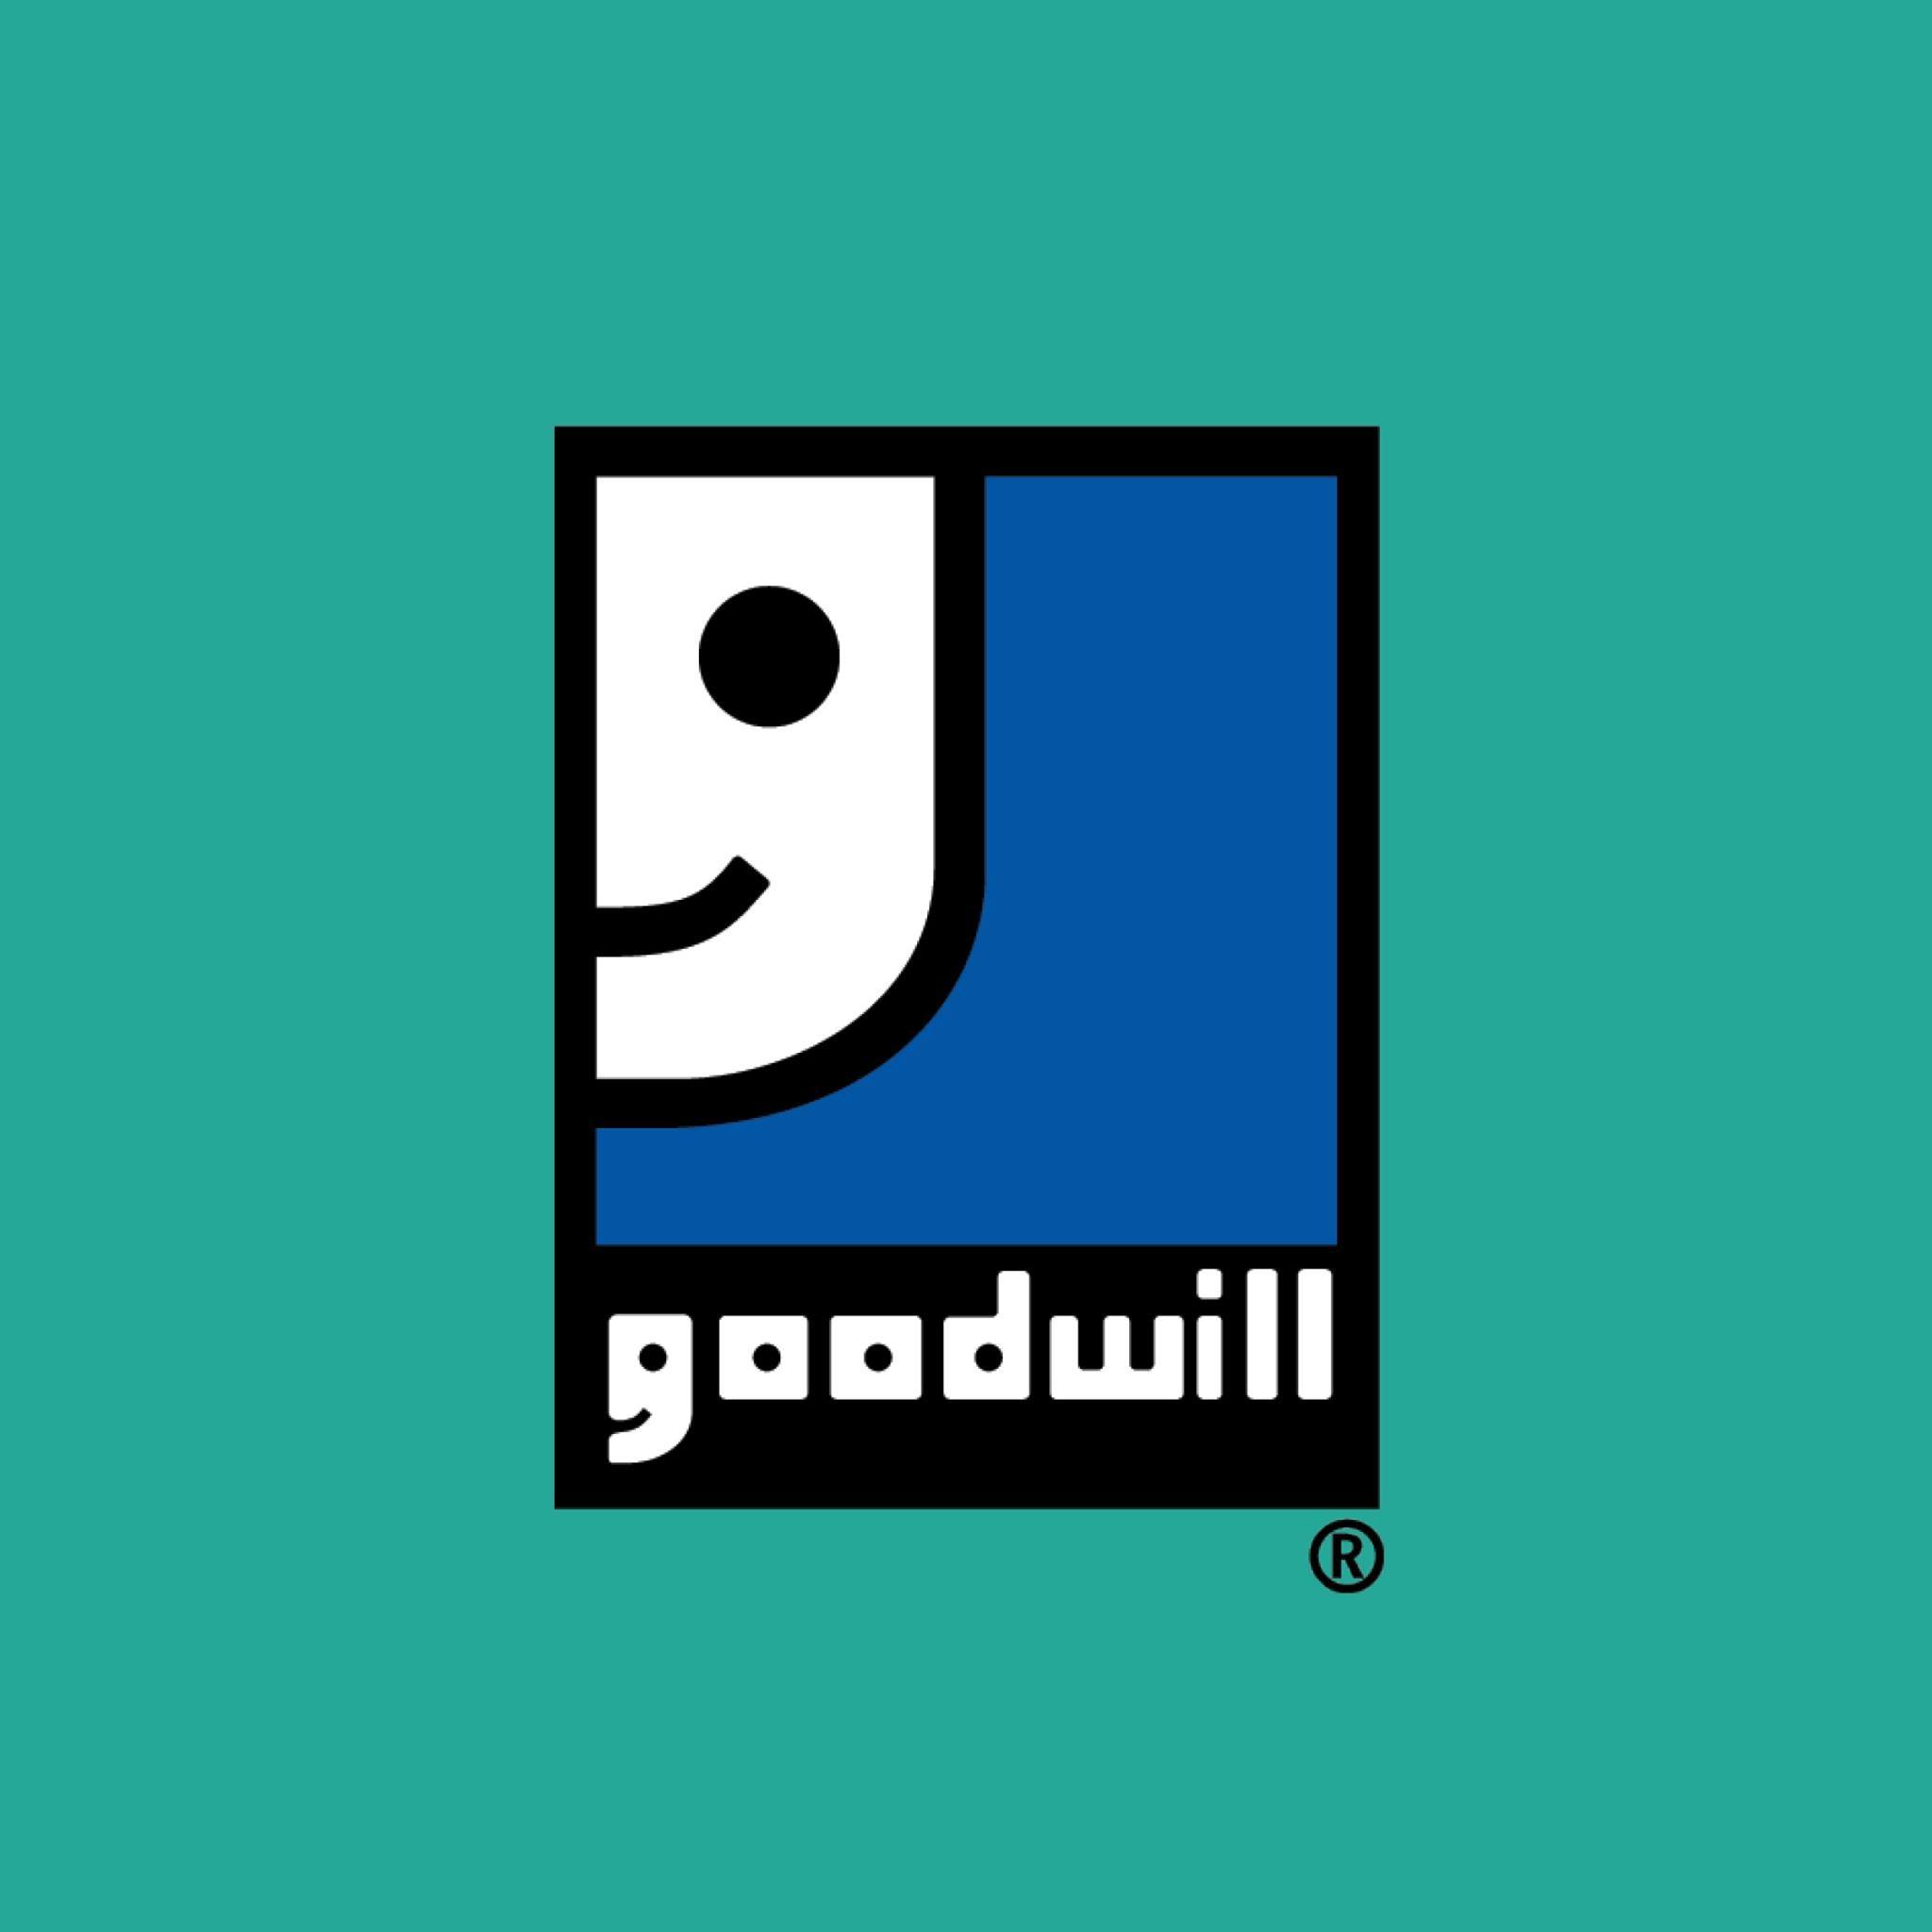 Company logo of Goodwill